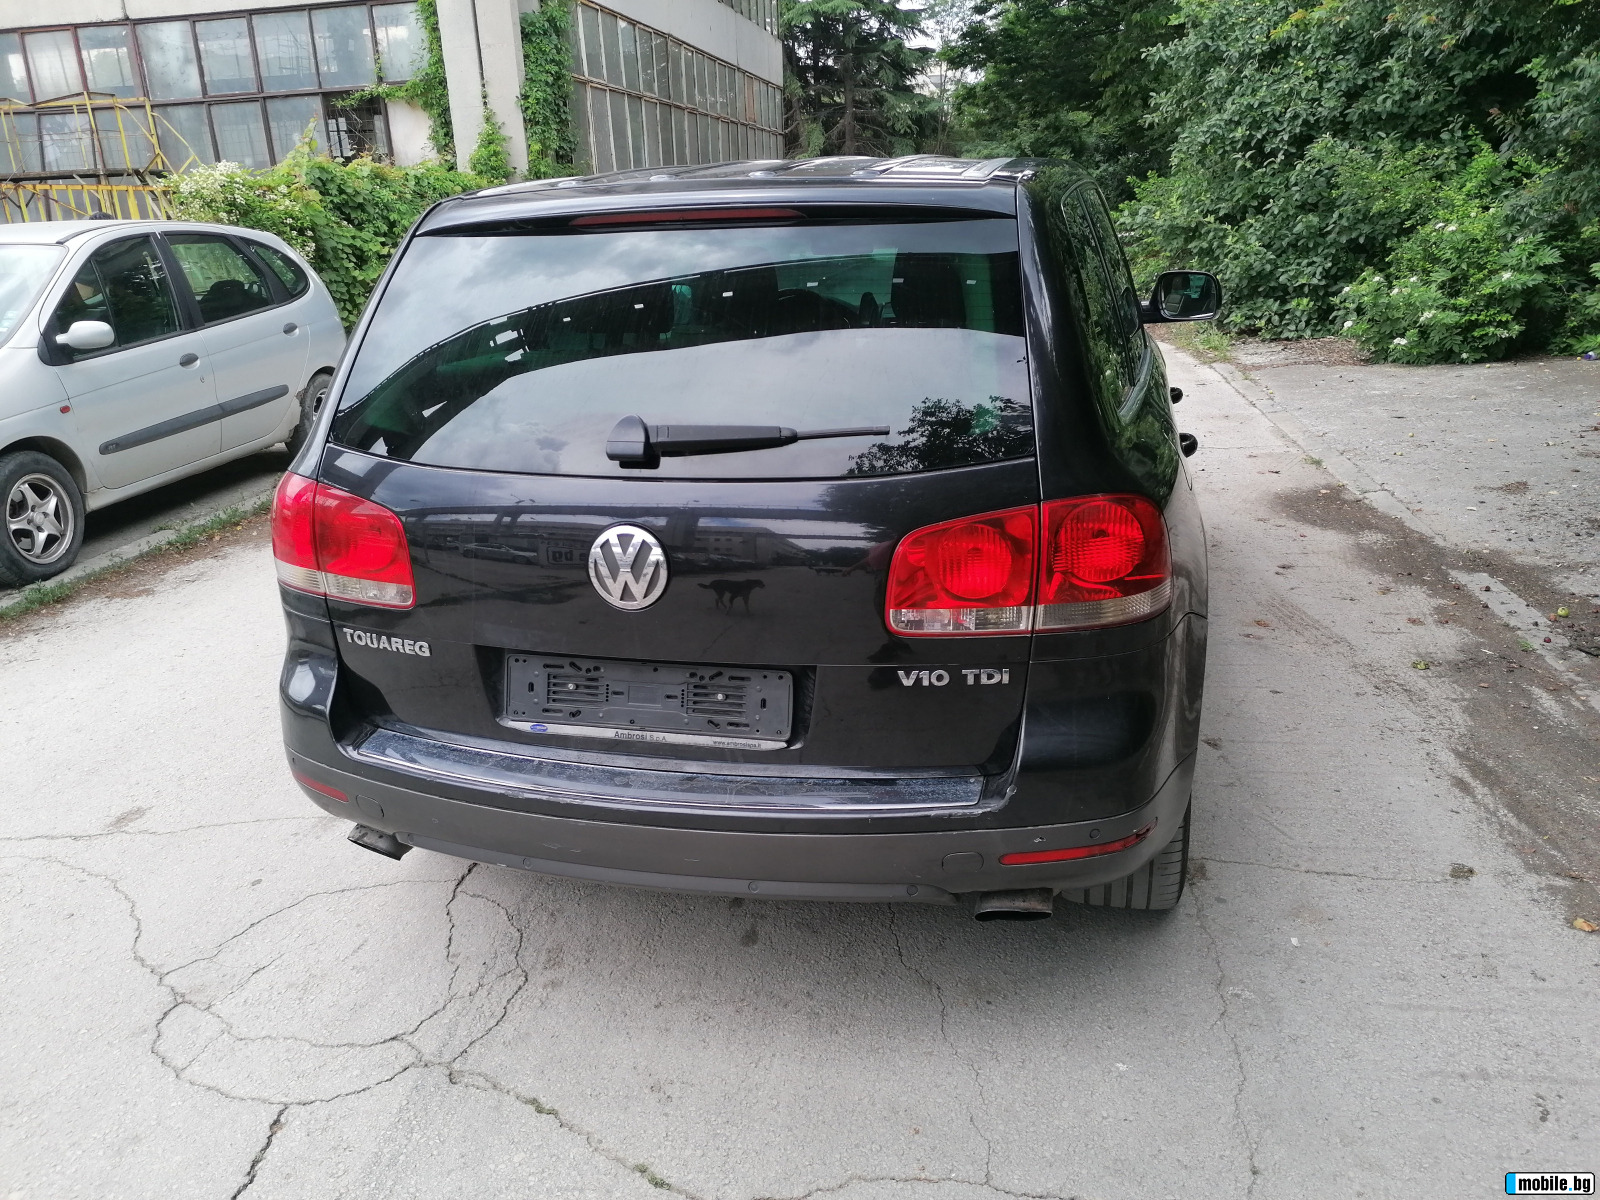 VW Touareg 3.0, 5.0 TDI | Mobile.bg   4